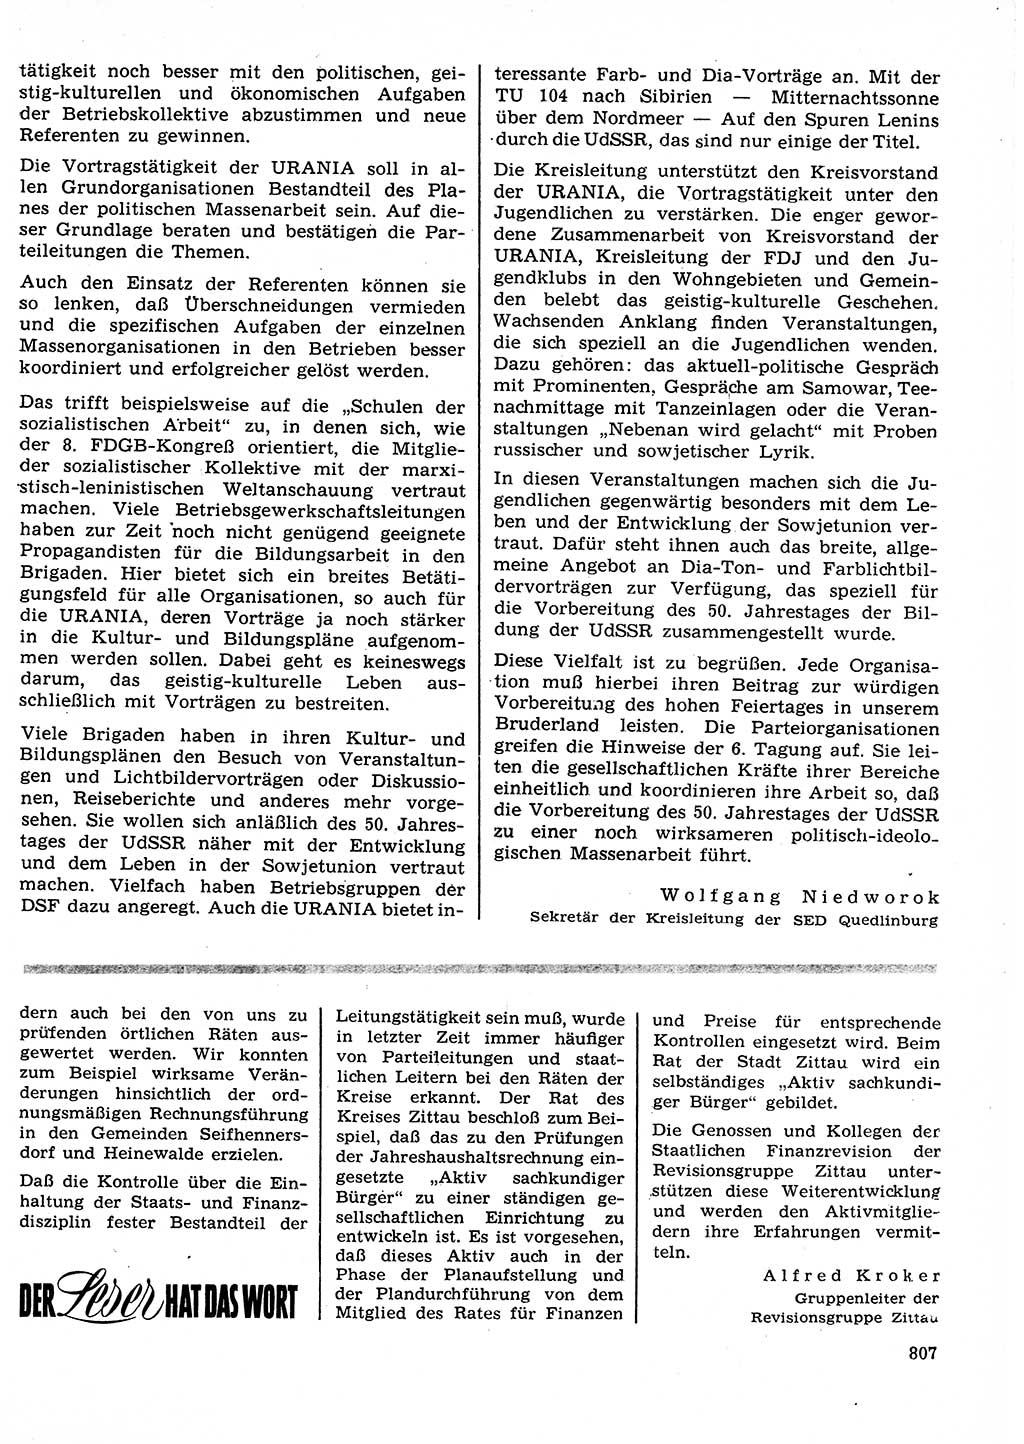 Neuer Weg (NW), Organ des Zentralkomitees (ZK) der SED (Sozialistische Einheitspartei Deutschlands) für Fragen des Parteilebens, 27. Jahrgang [Deutsche Demokratische Republik (DDR)] 1972, Seite 807 (NW ZK SED DDR 1972, S. 807)